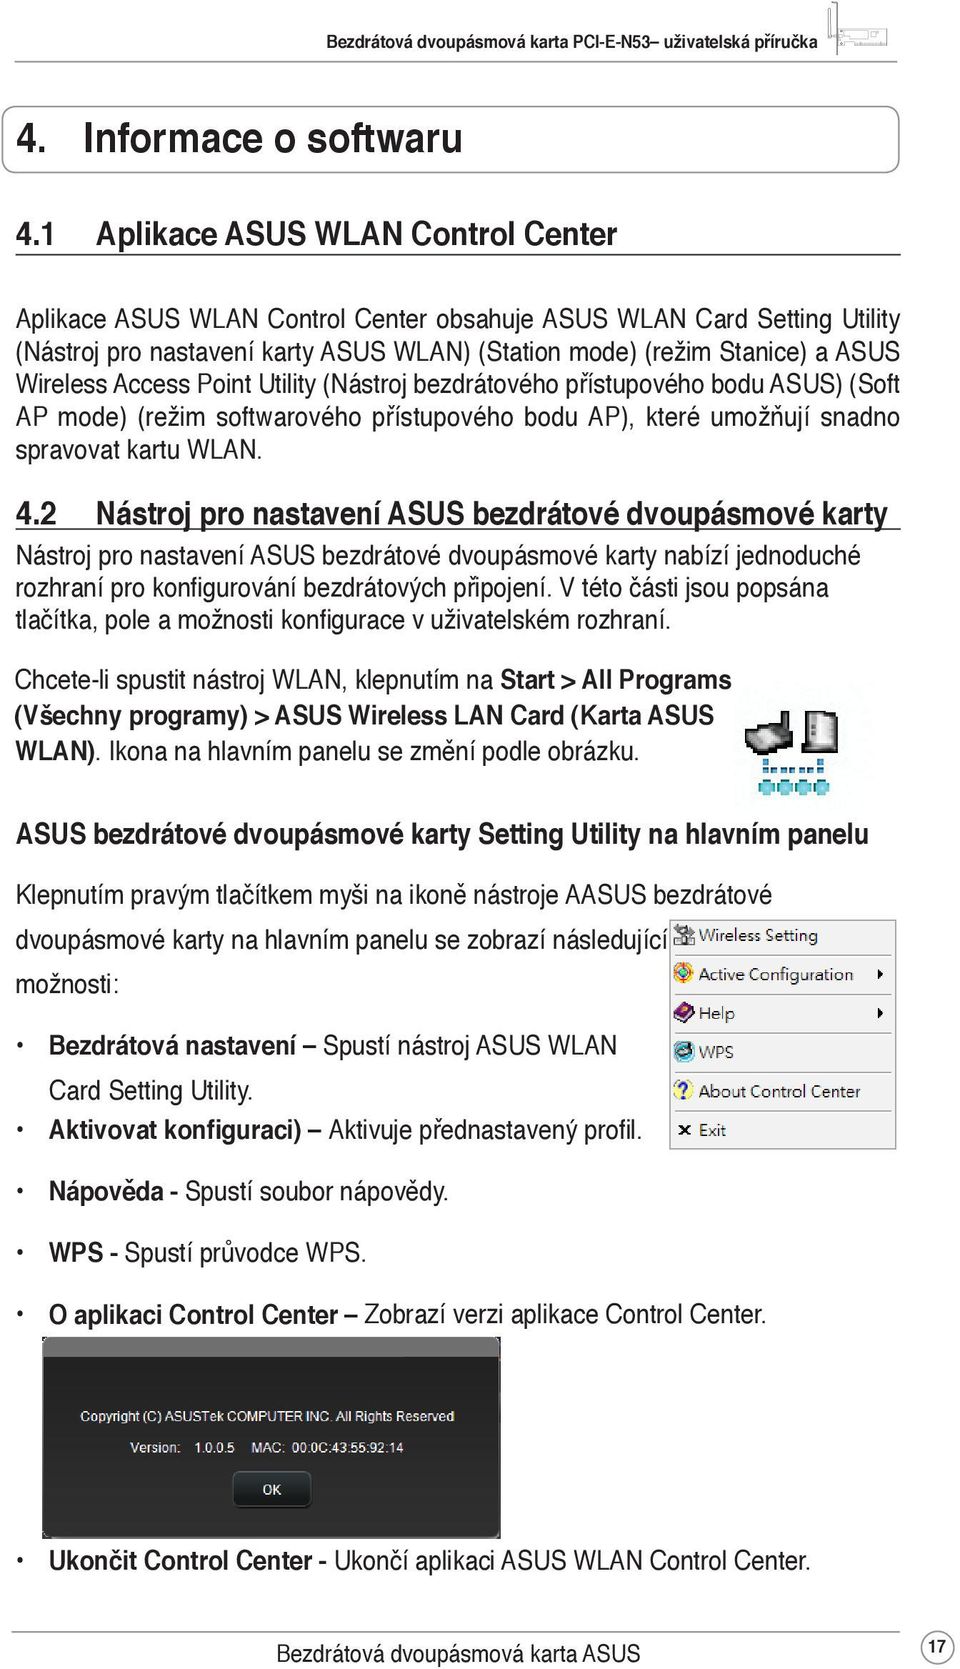 Access Point Utility (Nástroj bezdrátového přístupového bodu ASUS) (Soft AP mode) (režim softwarového přístupového bodu AP), které umožňují snadno spravovat kartu WLAN. 4.